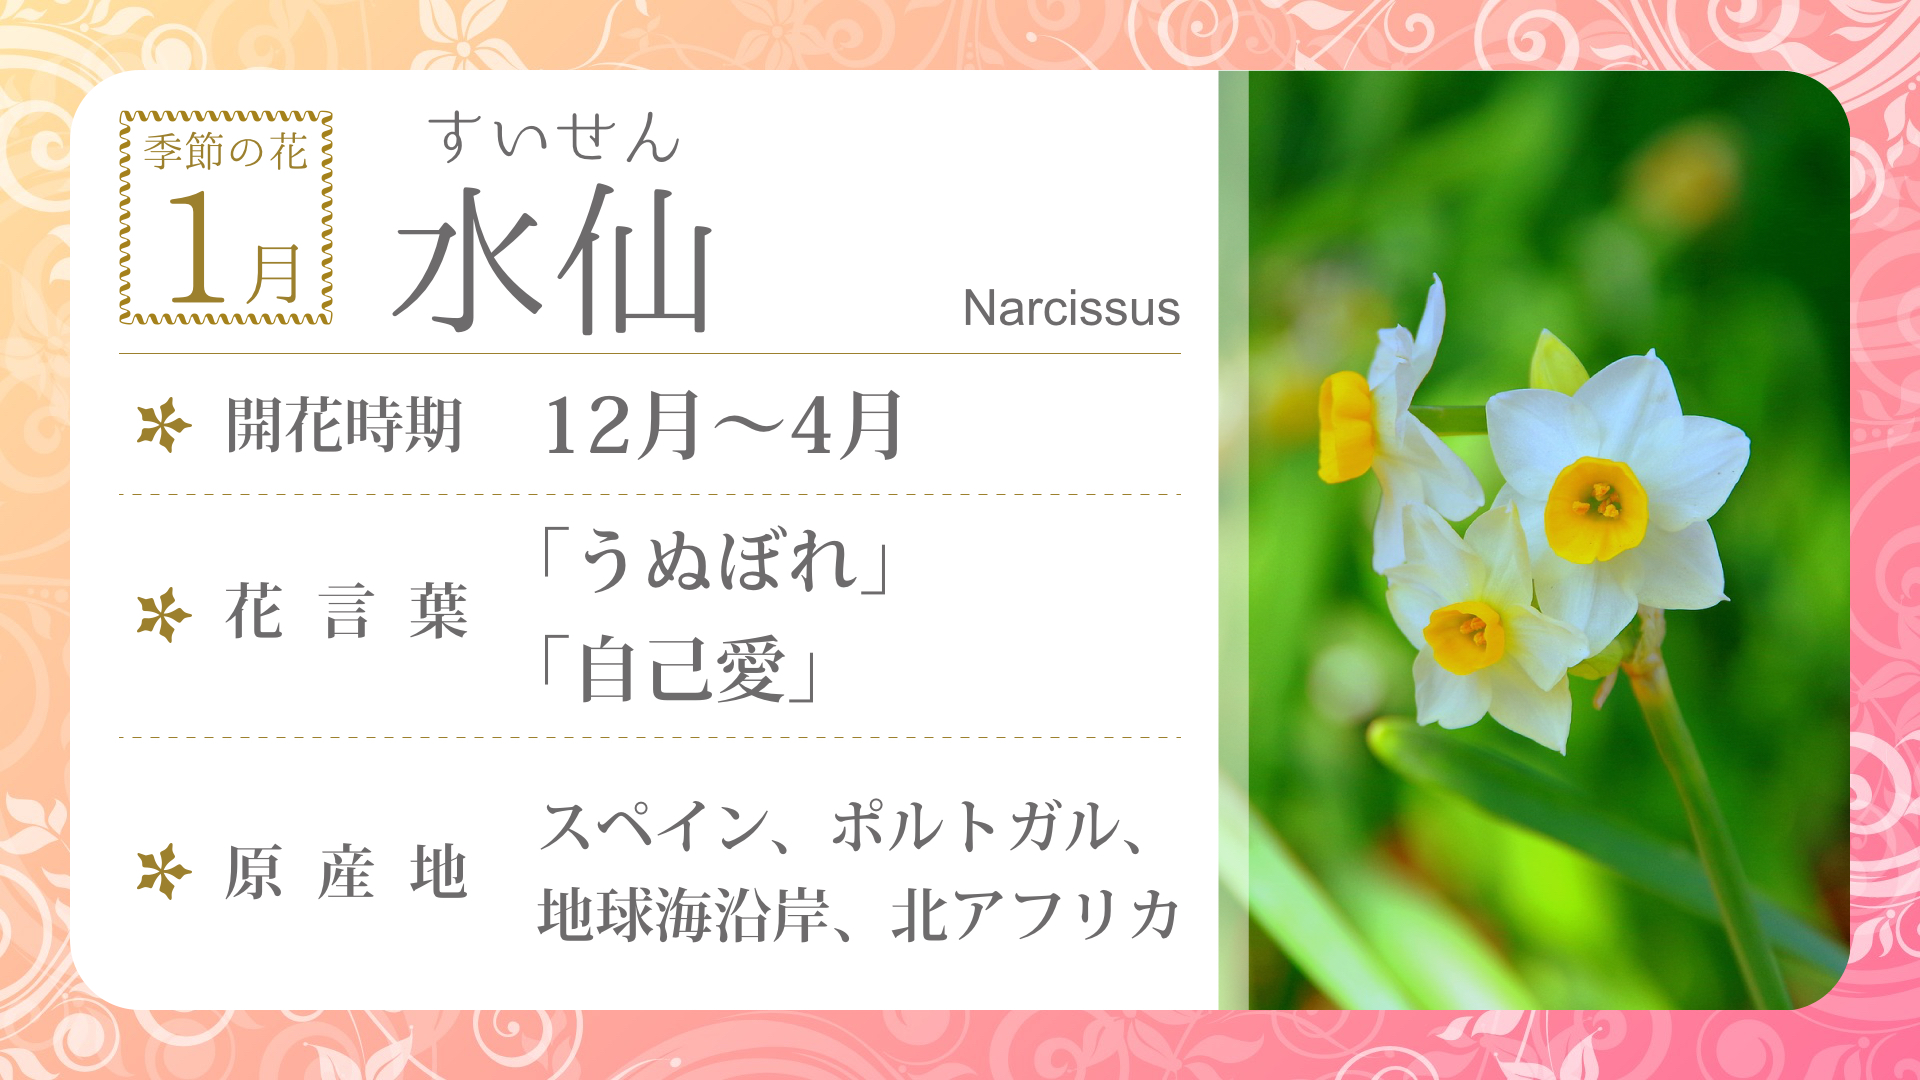 Nh Flower01 季節の花 1月 デジタルサイネージ配信コンテンツ